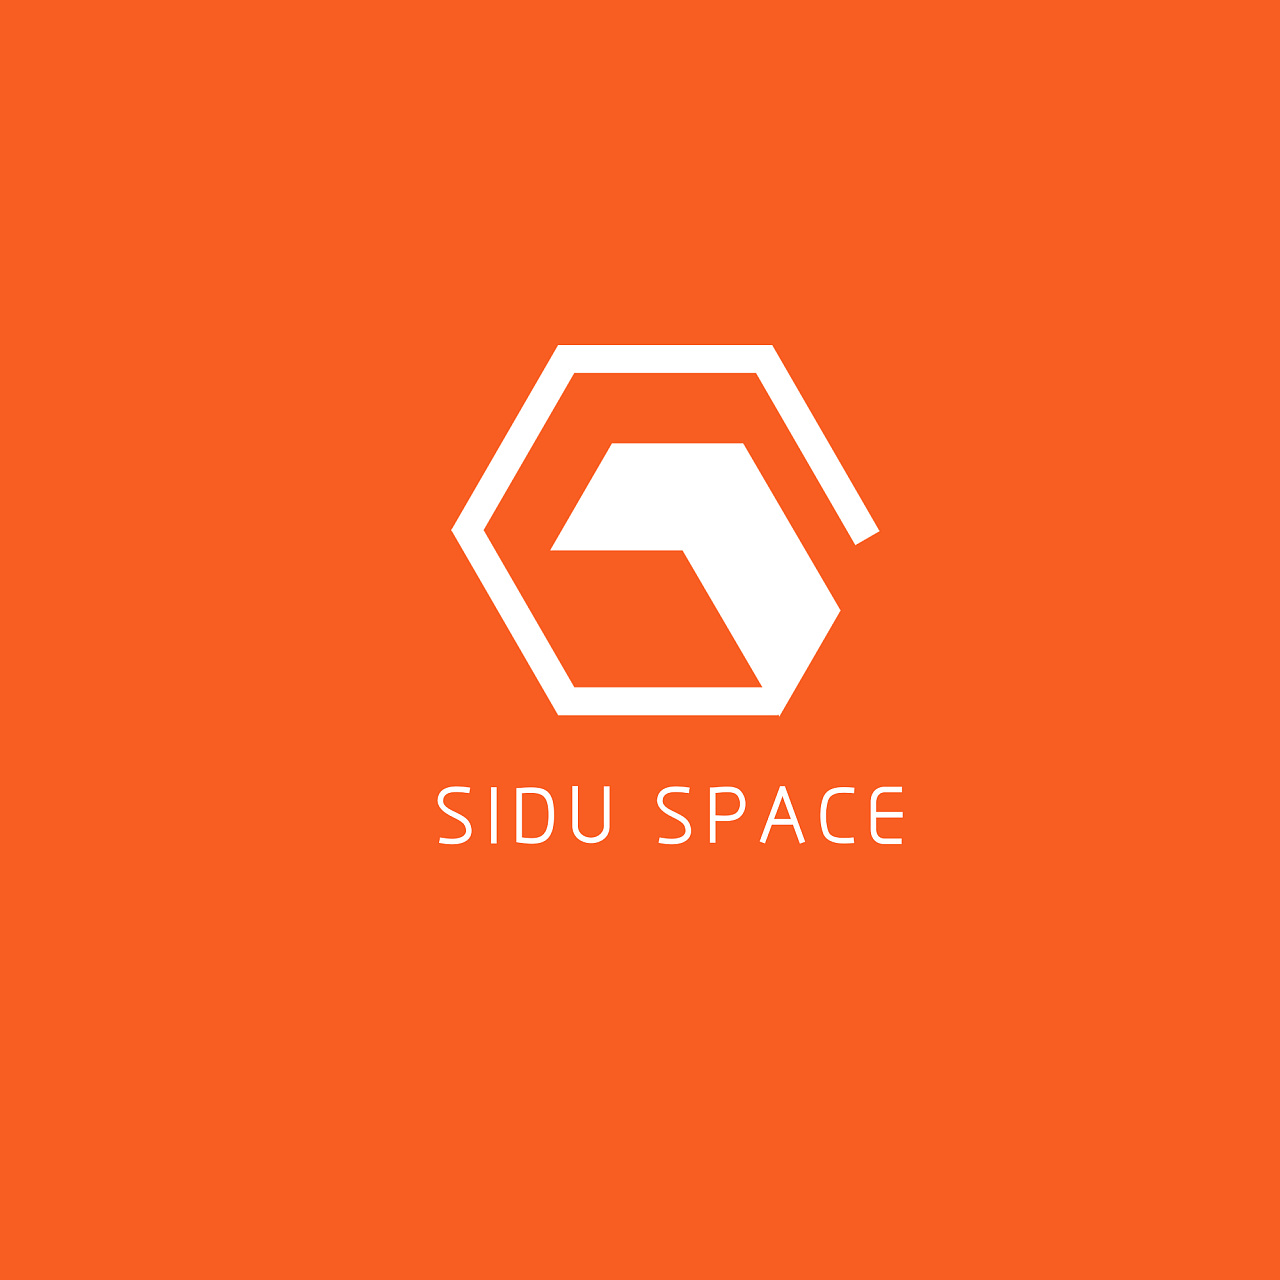 四度空间设计工作室|siduspace logo 定稿!